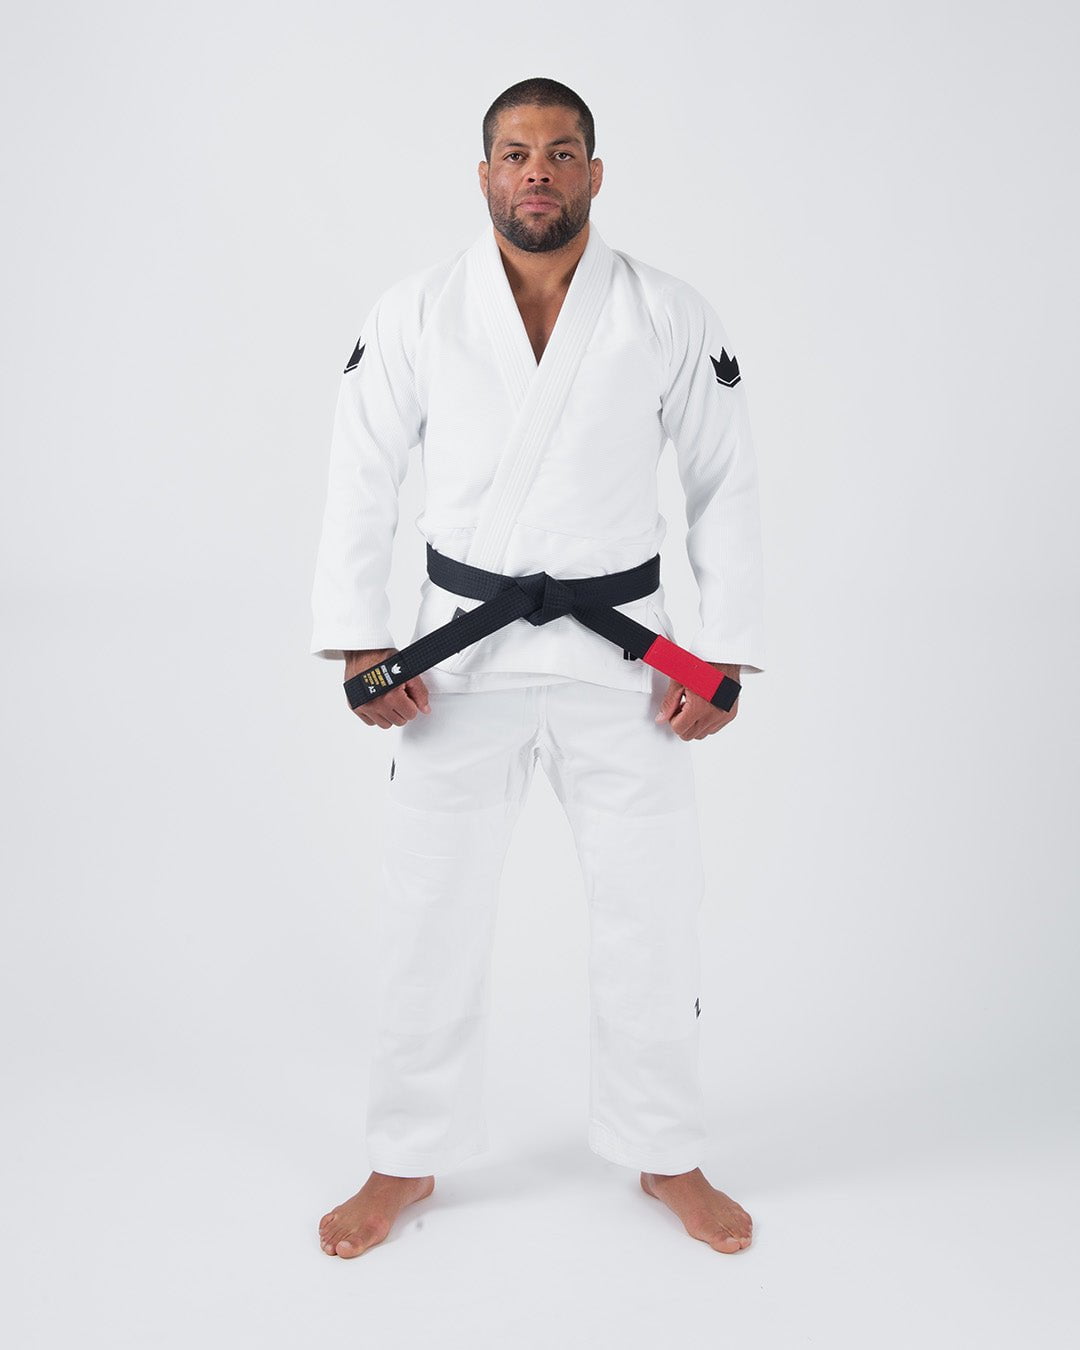 ONE Jiu Jitsu GI White - FREE White Belt